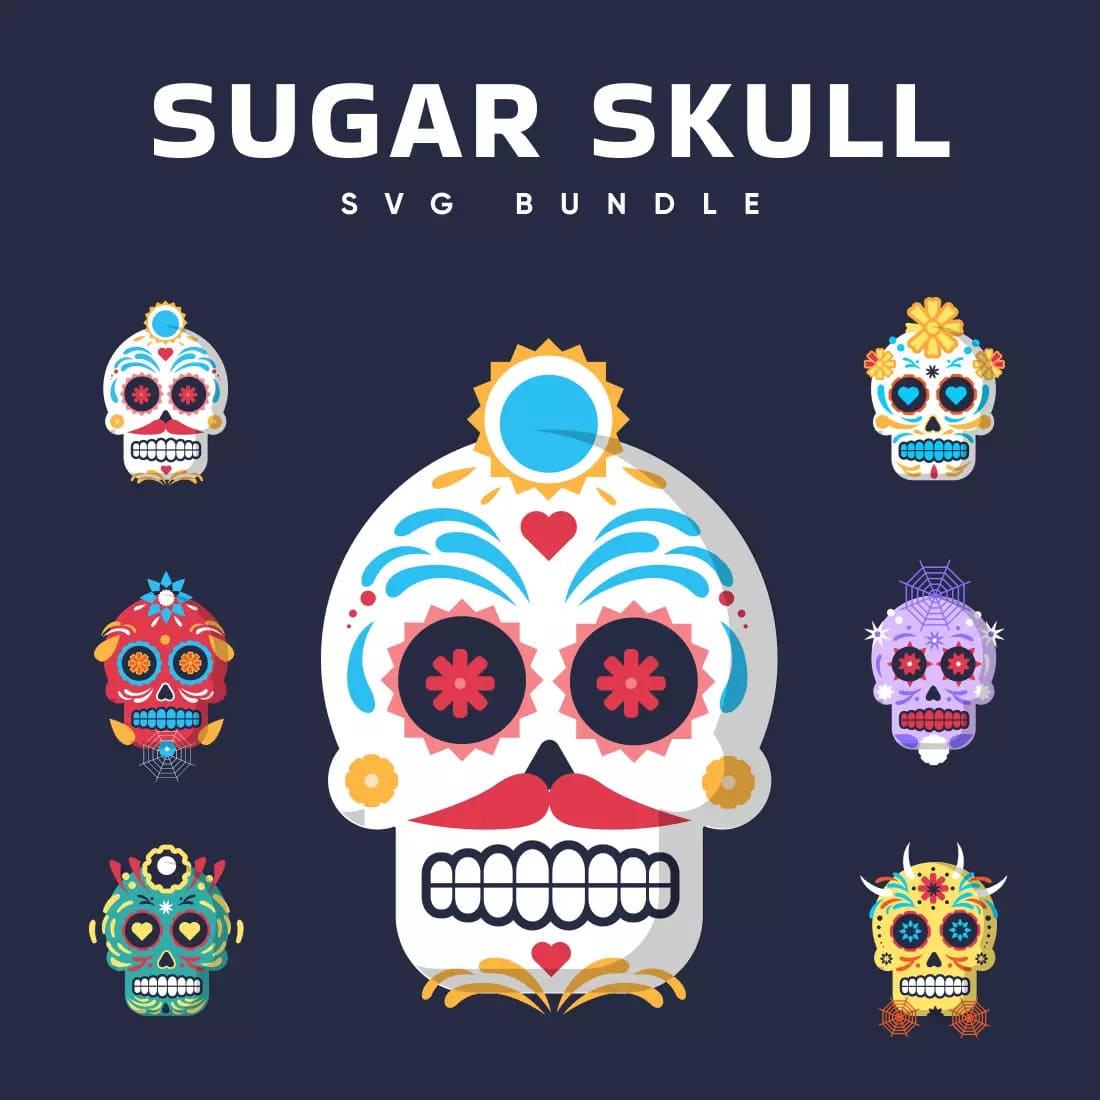 Sugar Skull SVG Bundle Preview 10.